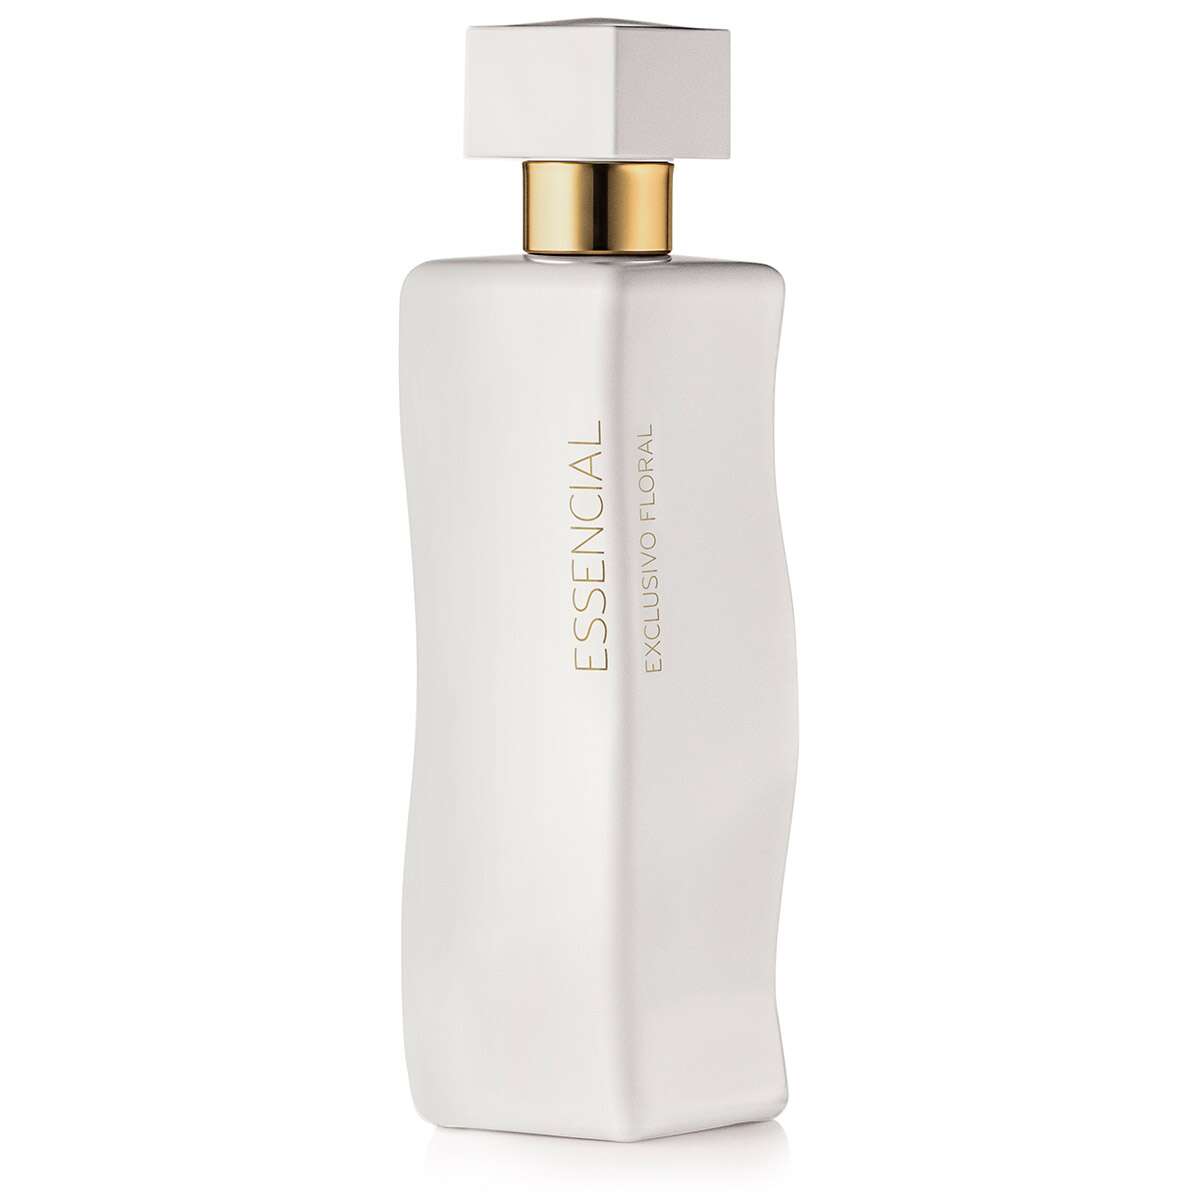 Perfume Feminino Natura Essencial Exclusivo Floral deo parfum com 100mL -  Rosa Beauty